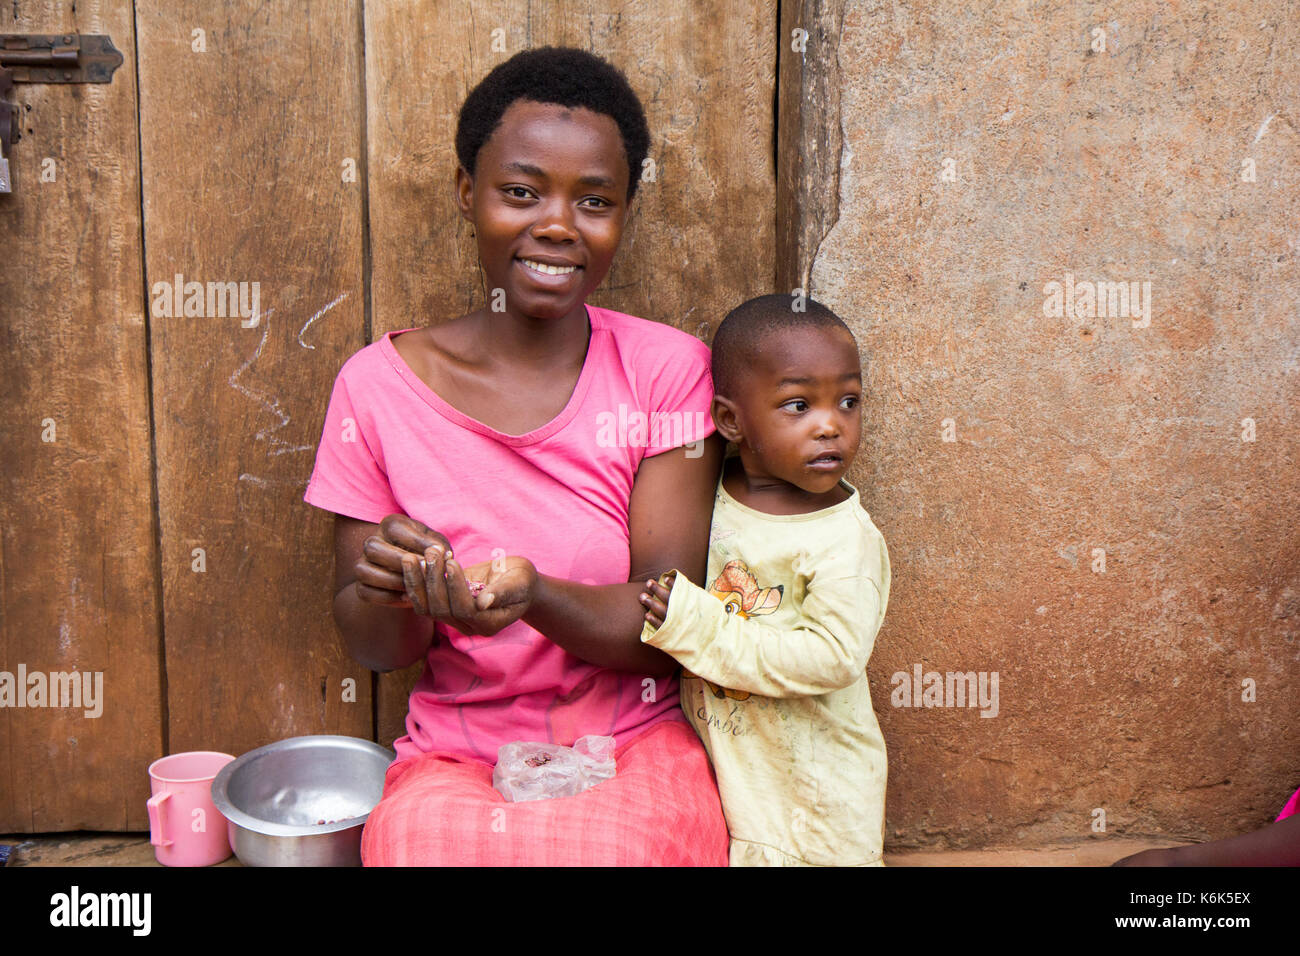 Lugazi, en Ouganda. 09 juin 2017. Une mère africaine de rire avec un petit enfant garçon. la femme est assise sur le seuil de la porte. les grains de tri Banque D'Images